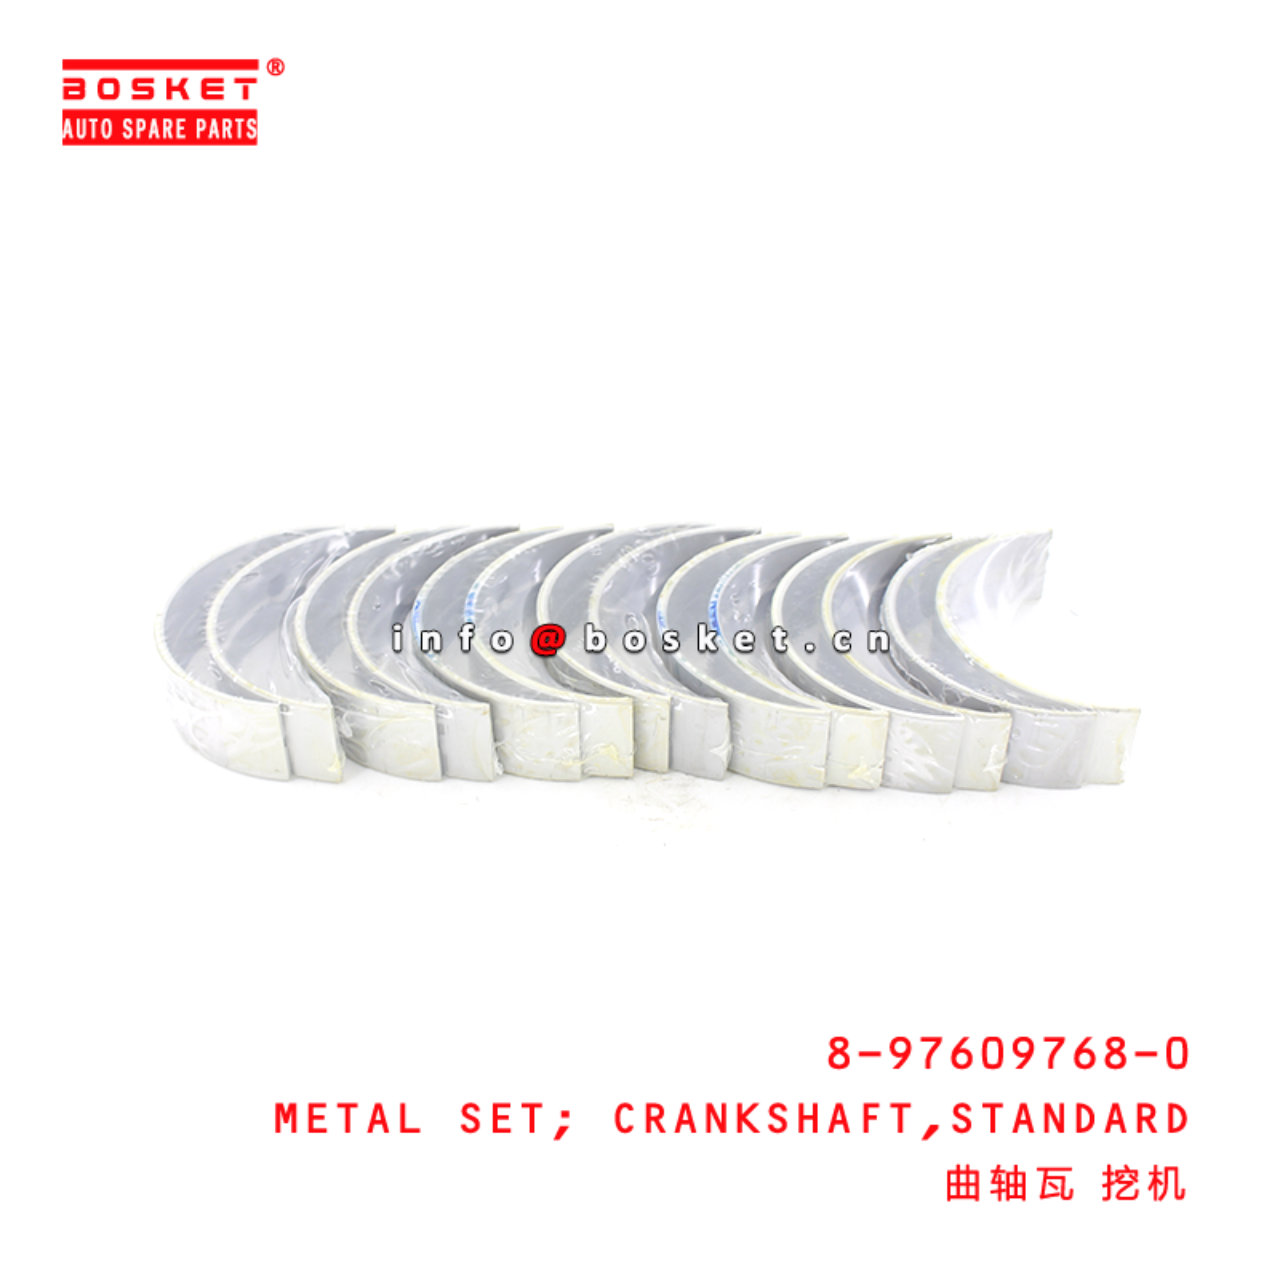 8-97609768-0 Standard Crankshaft Metal Set Suitable for ISUZU CVZ 6UZ1 8976097680